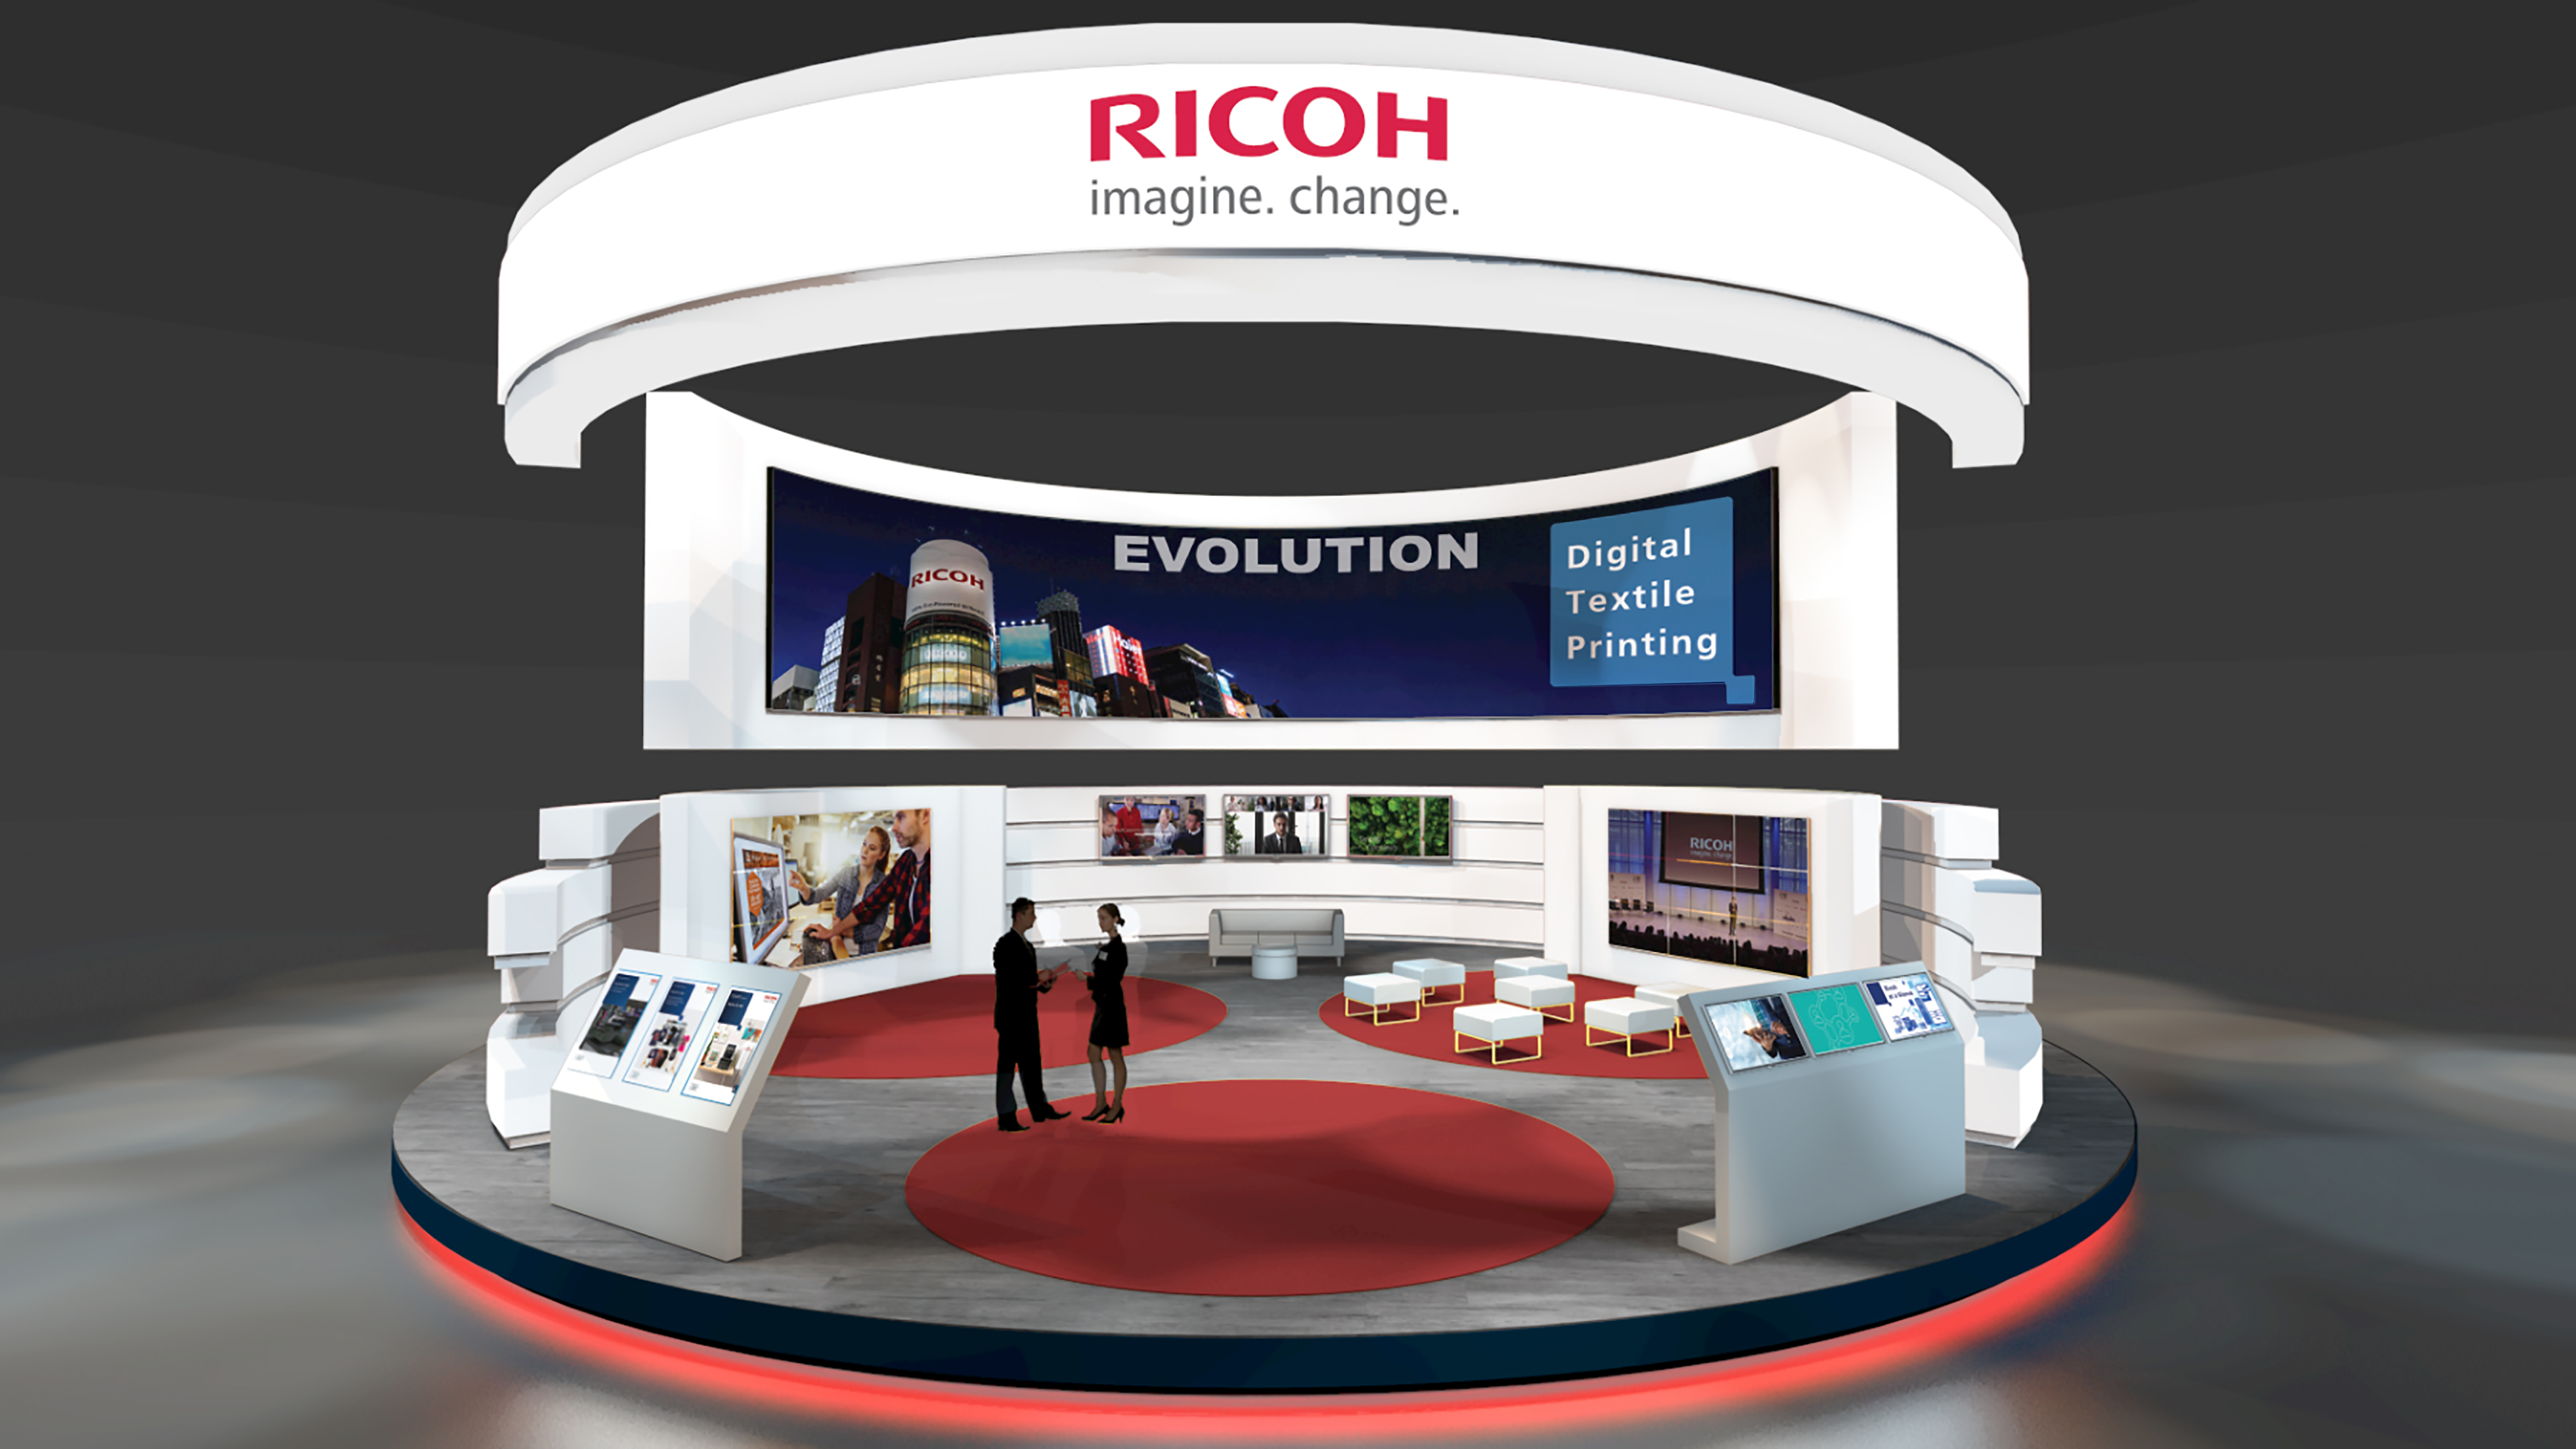 Az Innovate 2021 szponzora, a Ricoh bemutatja a digitális textilnyomtatás következő evolúciós állomását.